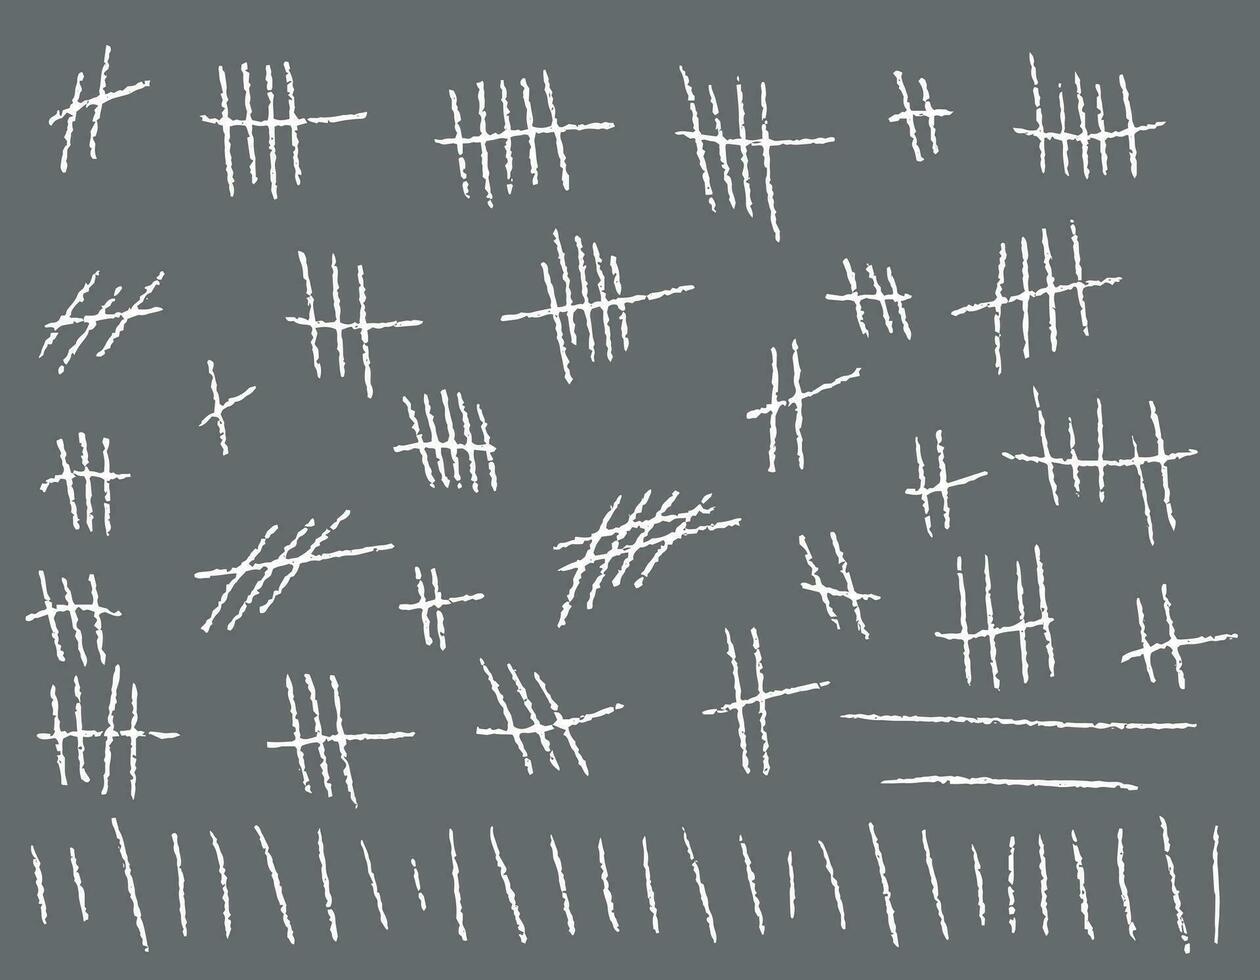 cuenta marca.a conjunto de trazos, un contar de marcas es contado tiza en un gris antecedentes palos el línea mostrador en el pared. vector